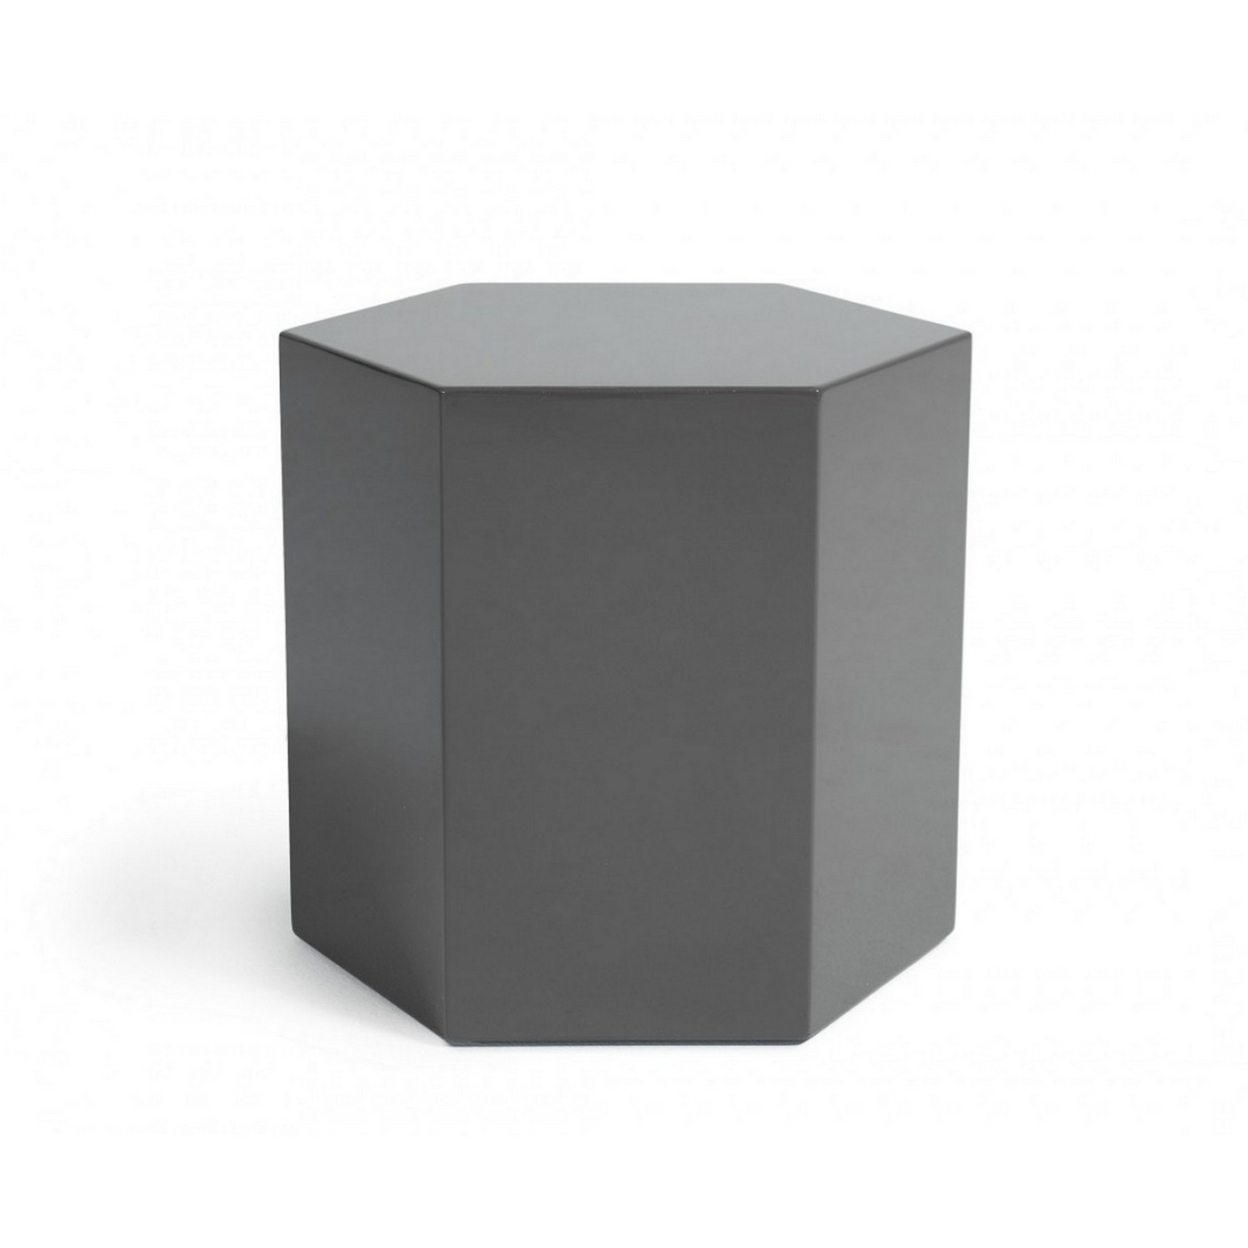 Contemporary High Gloss Hexagonal Wooden End Table, Medium, Gray- Saltoro Sherpi